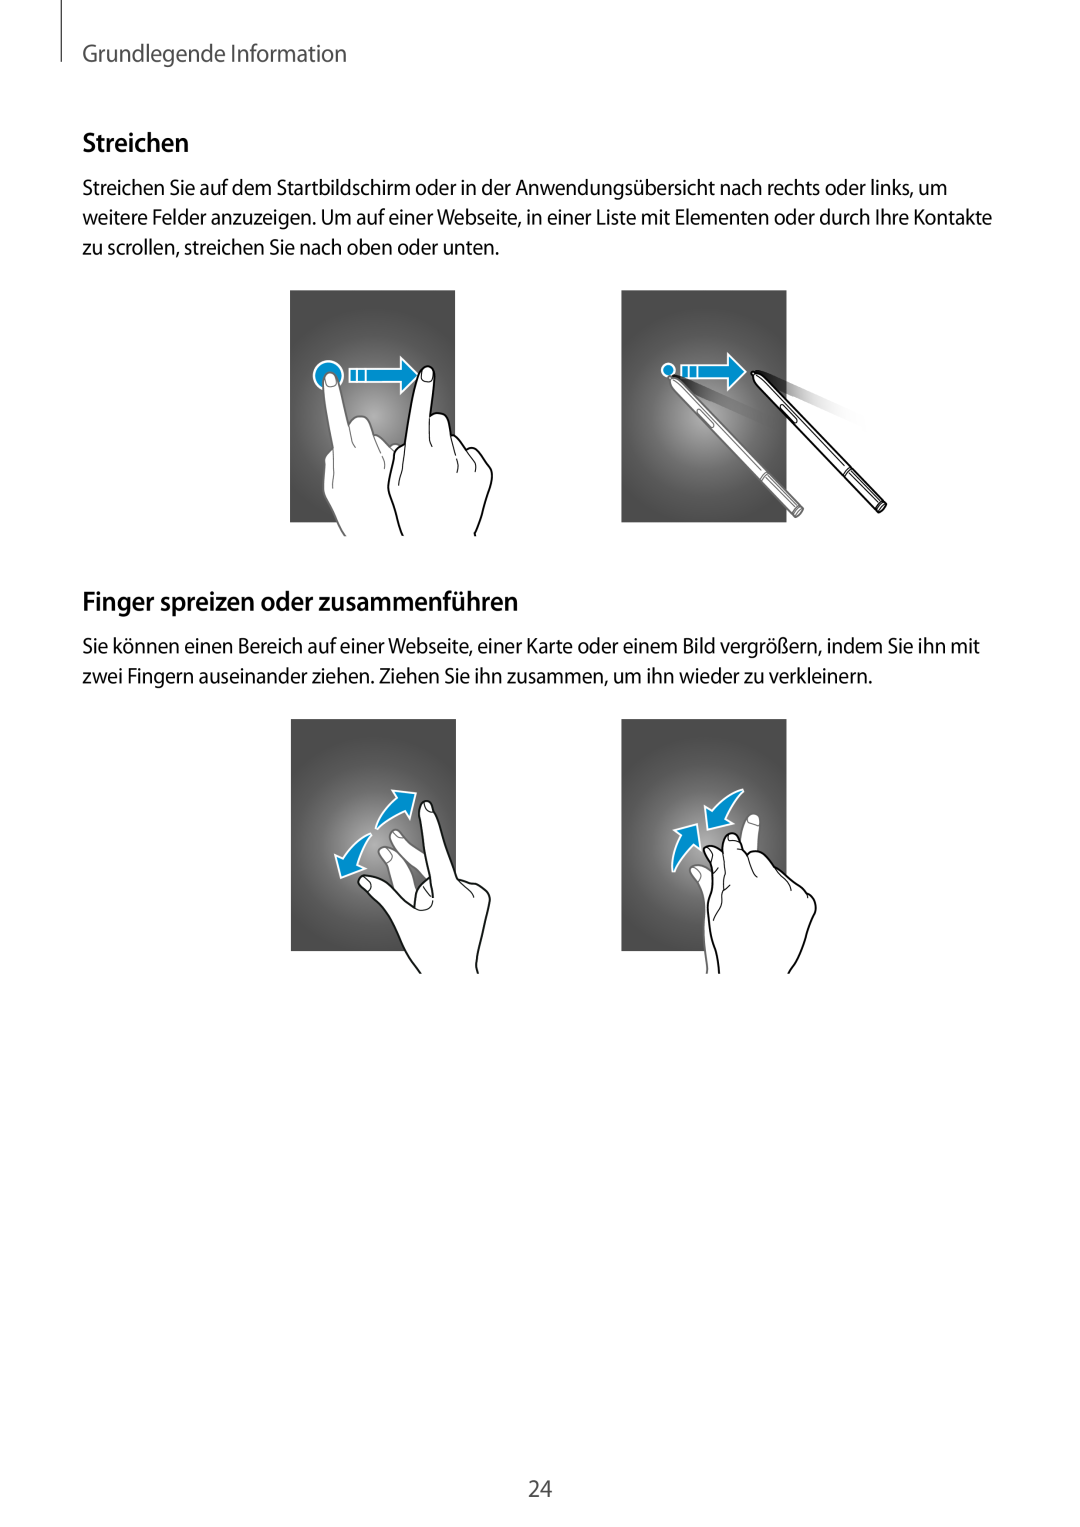 Samsung SM-N910FZDEDBT, SM-N910FZWEEUR manual Finger spreizen oder zusammenführen, Streichen, Grundlegende Information 